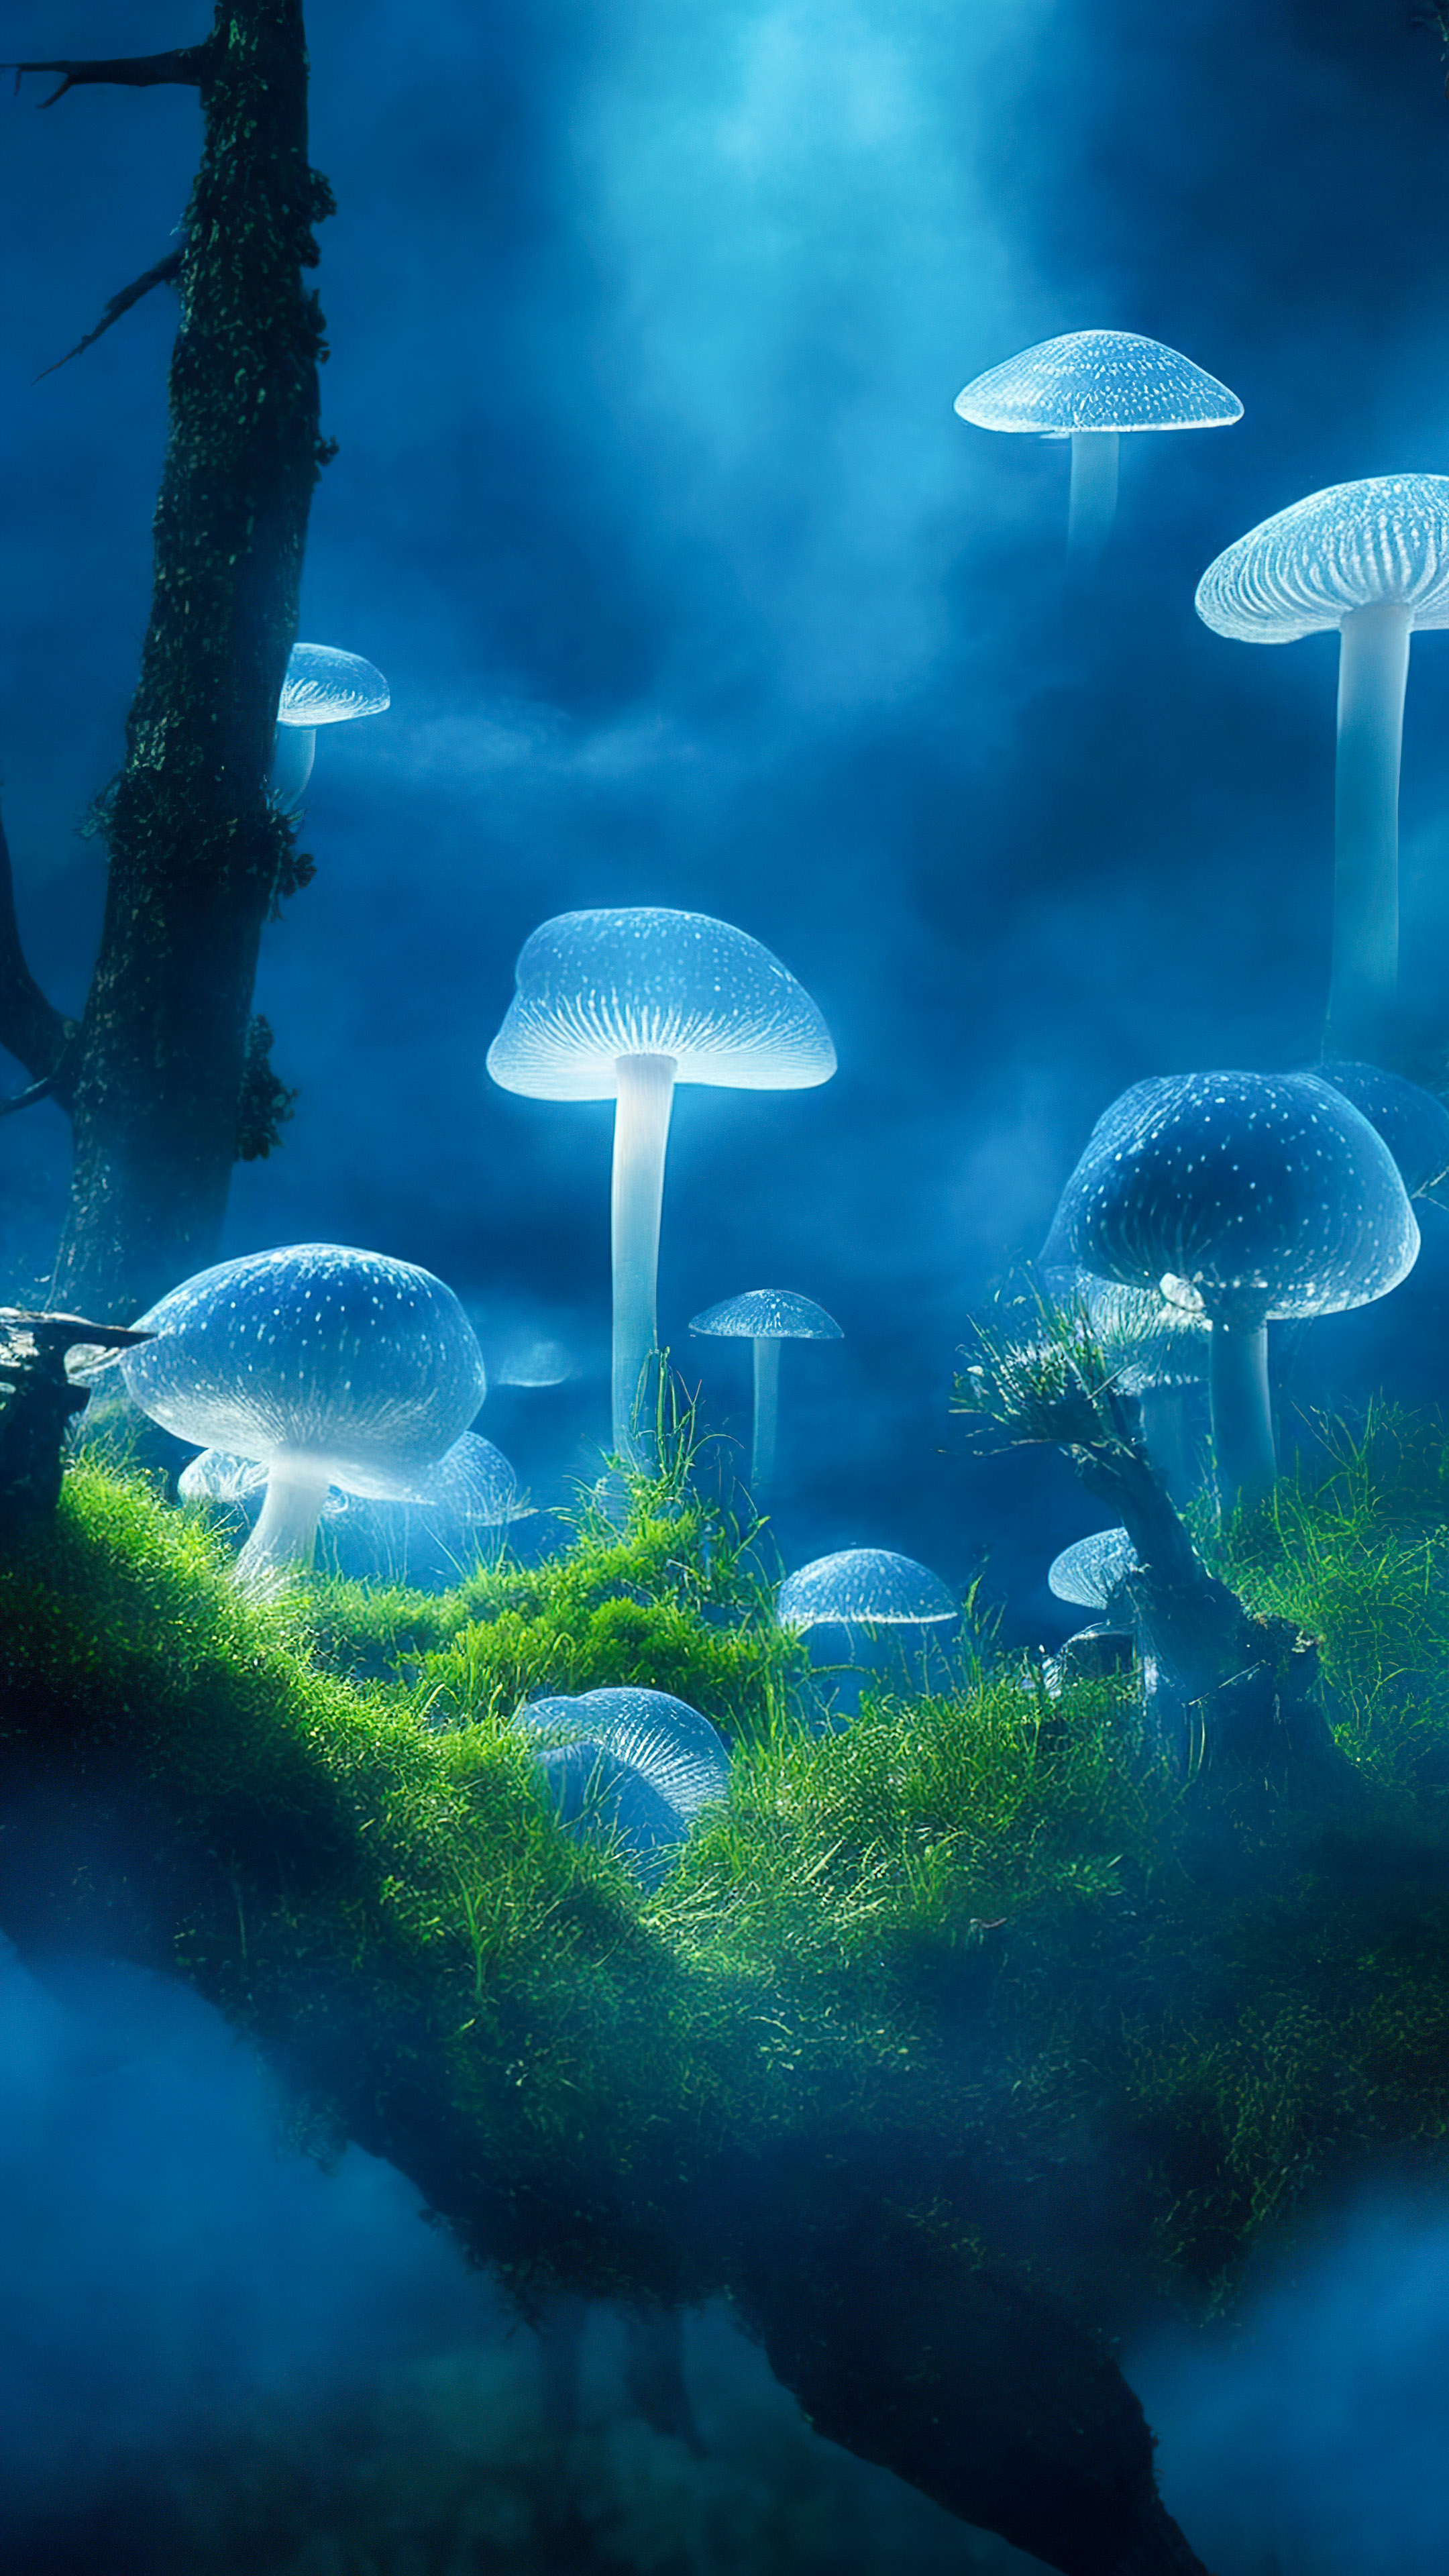 Perdez-vous dans la magie de nos jolis fonds d'écran de nature, révélant une clairière mystique avec des champignons bioluminescents, créant une scène enchantée et surnaturelle.